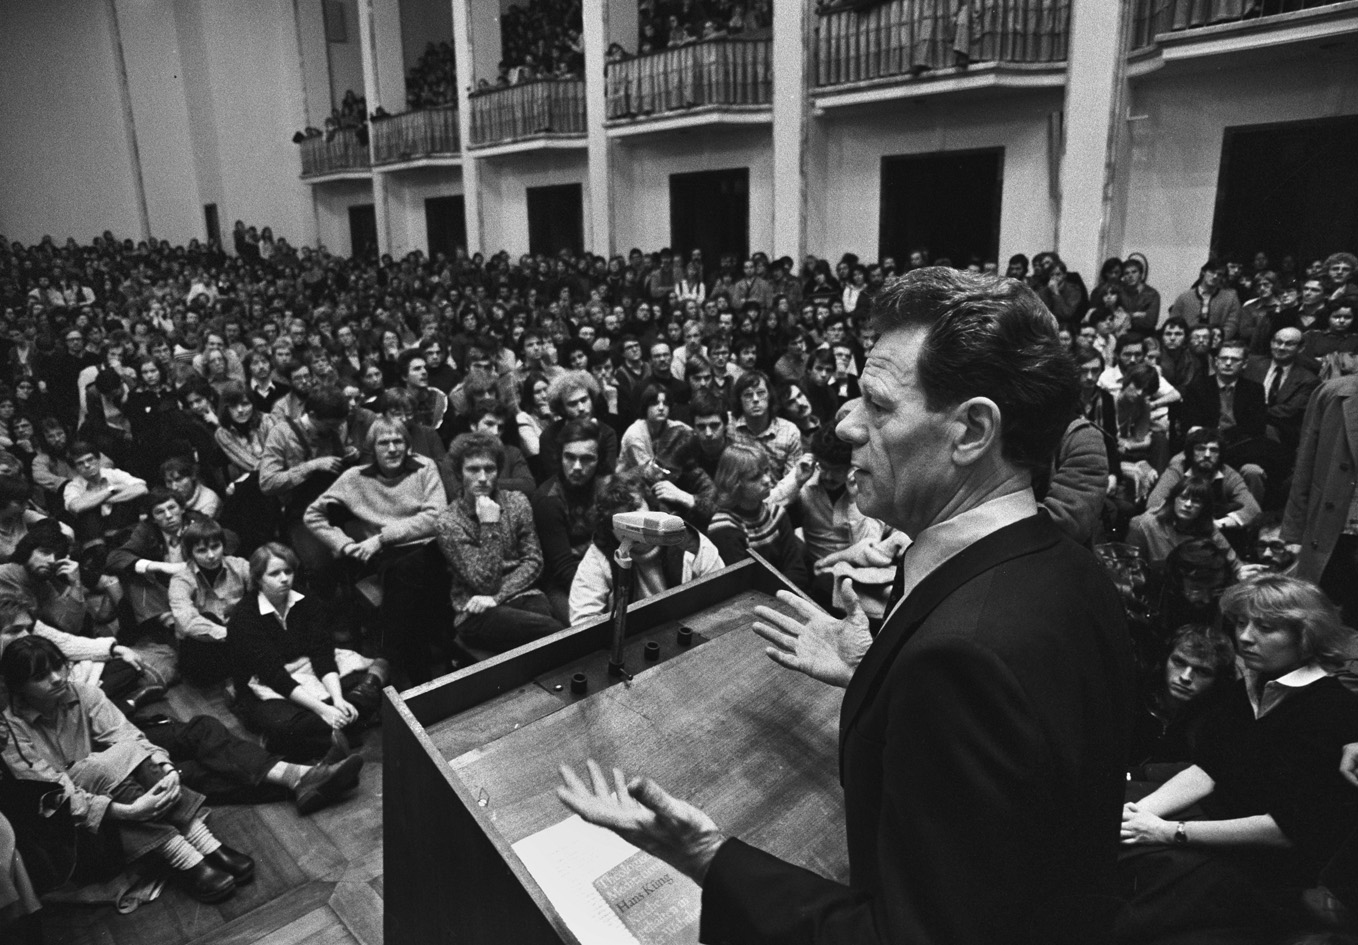 Das Bild (schwarz-weiß) zeigt Hans Küng, den Gründer der Stiftung Weltethos, an einem Pult im vollen Festsaal der Universität Tübingen bei einer Rede.